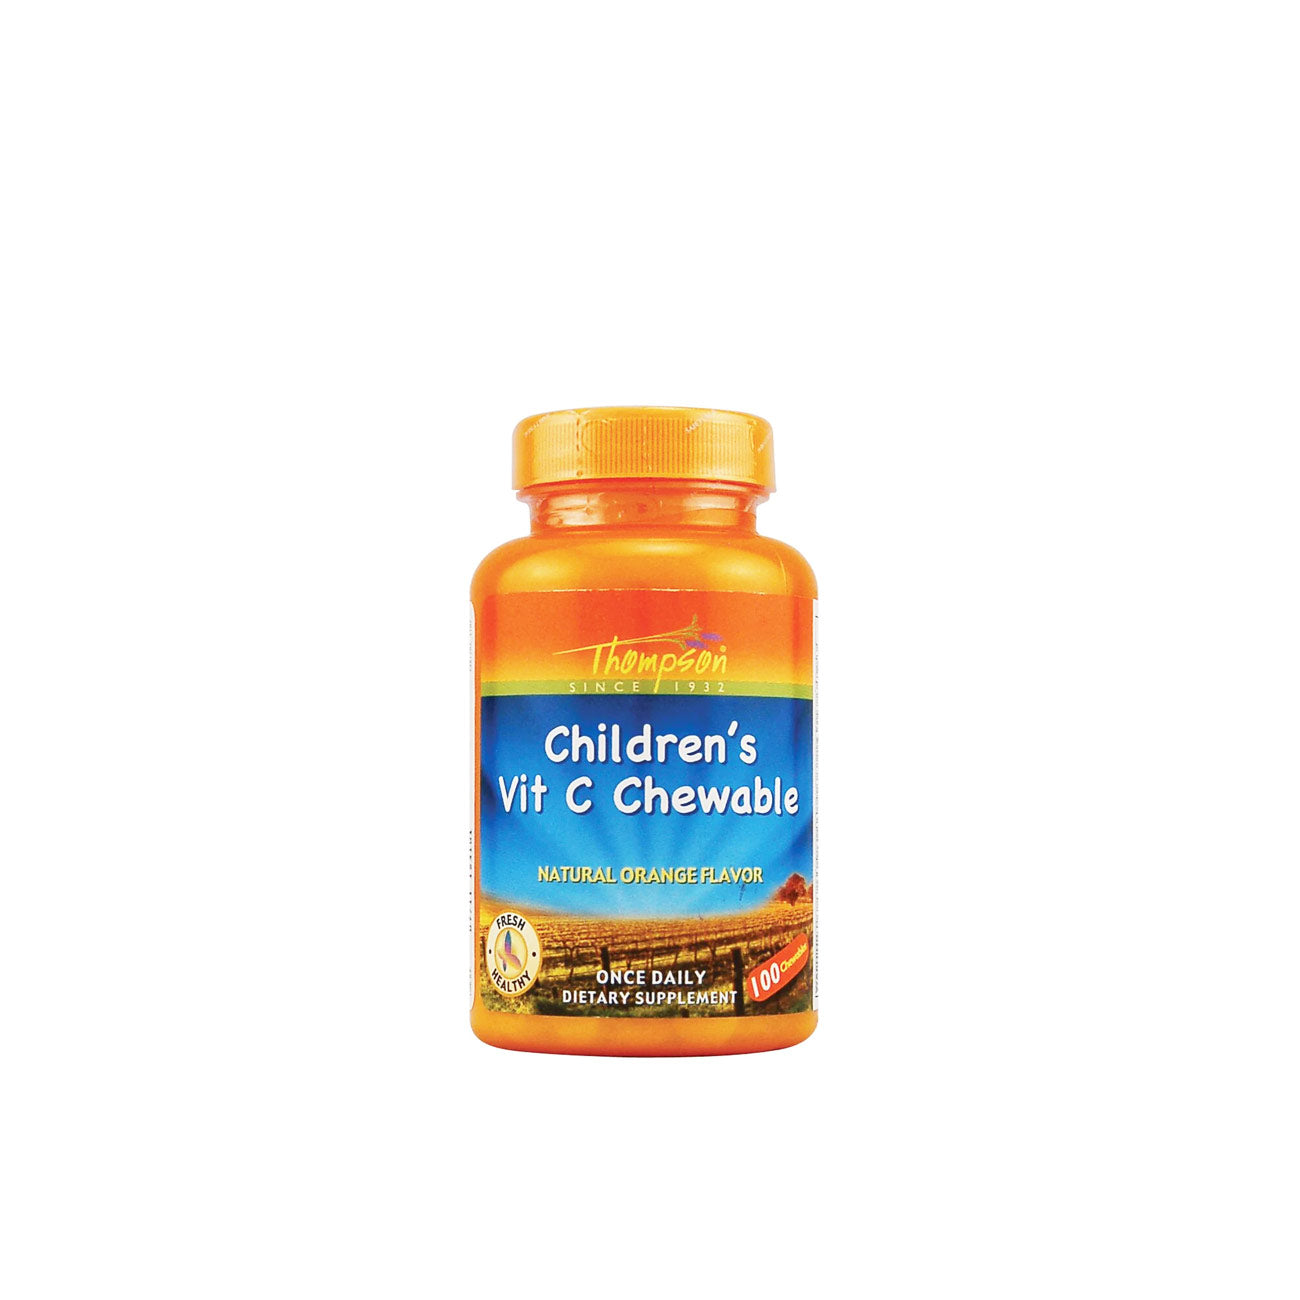 Vitamin C chewable